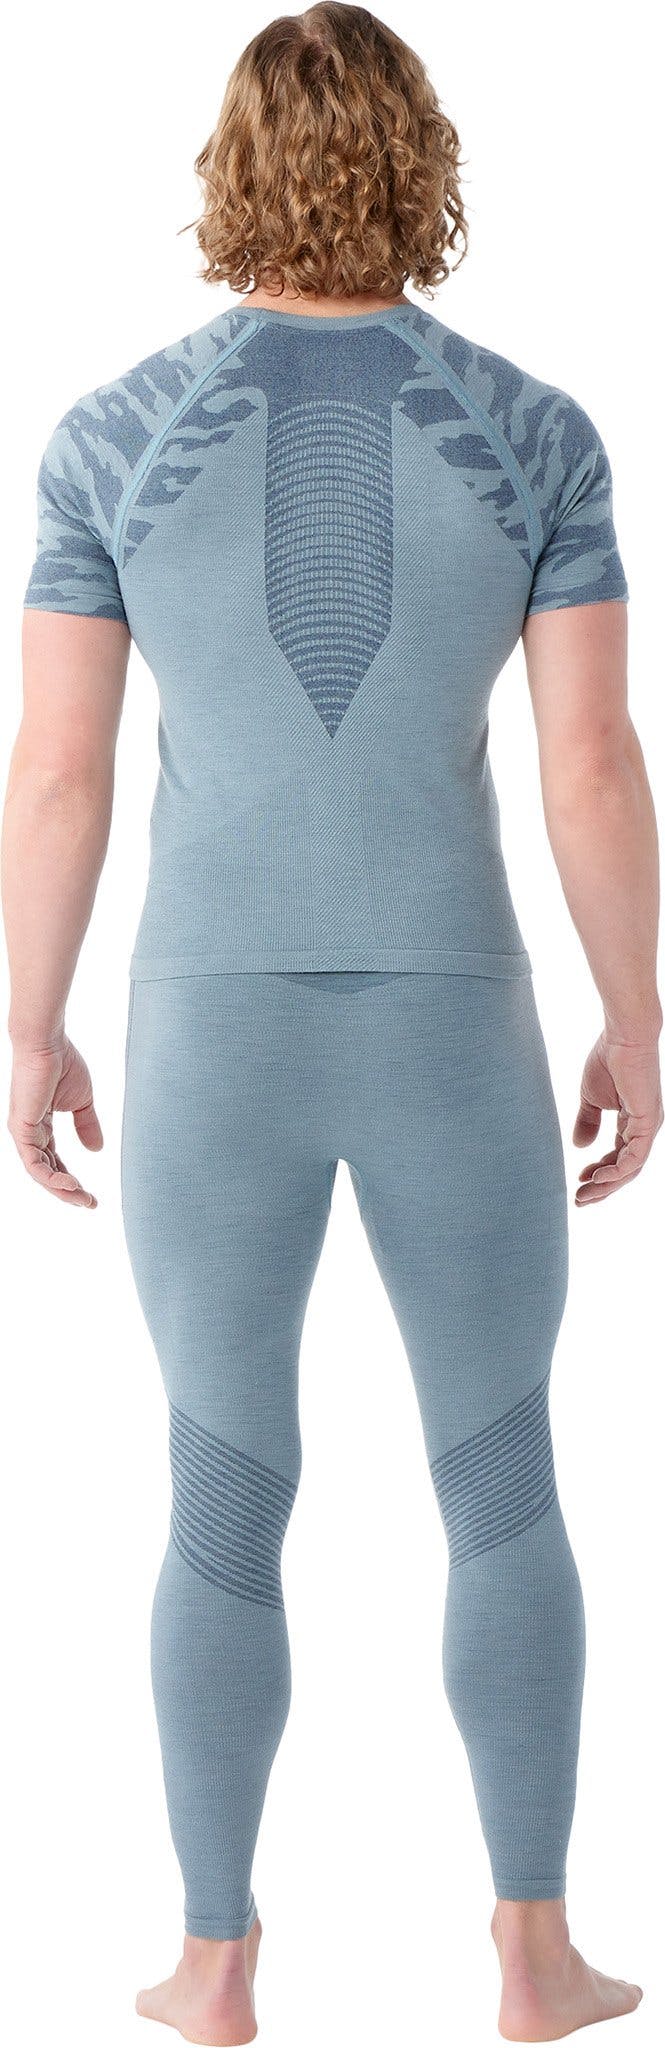 Numéro de l'image de la galerie de produits 2 pour le produit T-shirt à manches courtes Active Intraknit - Homme